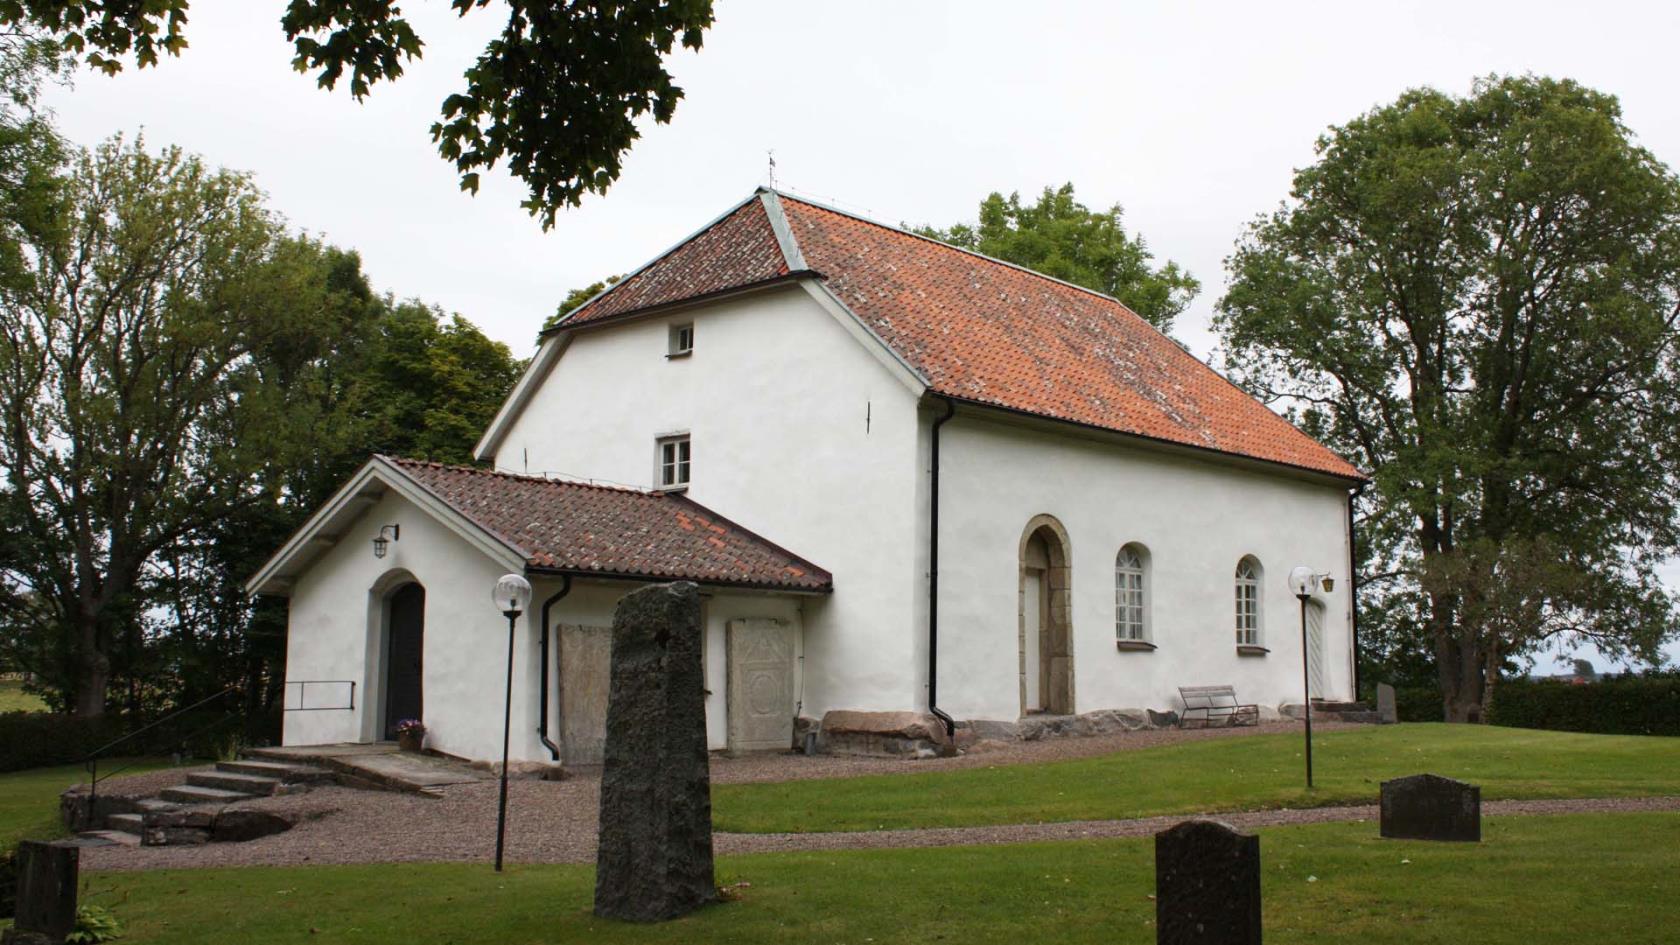 Södra Lundby kyrka i Vedum församling